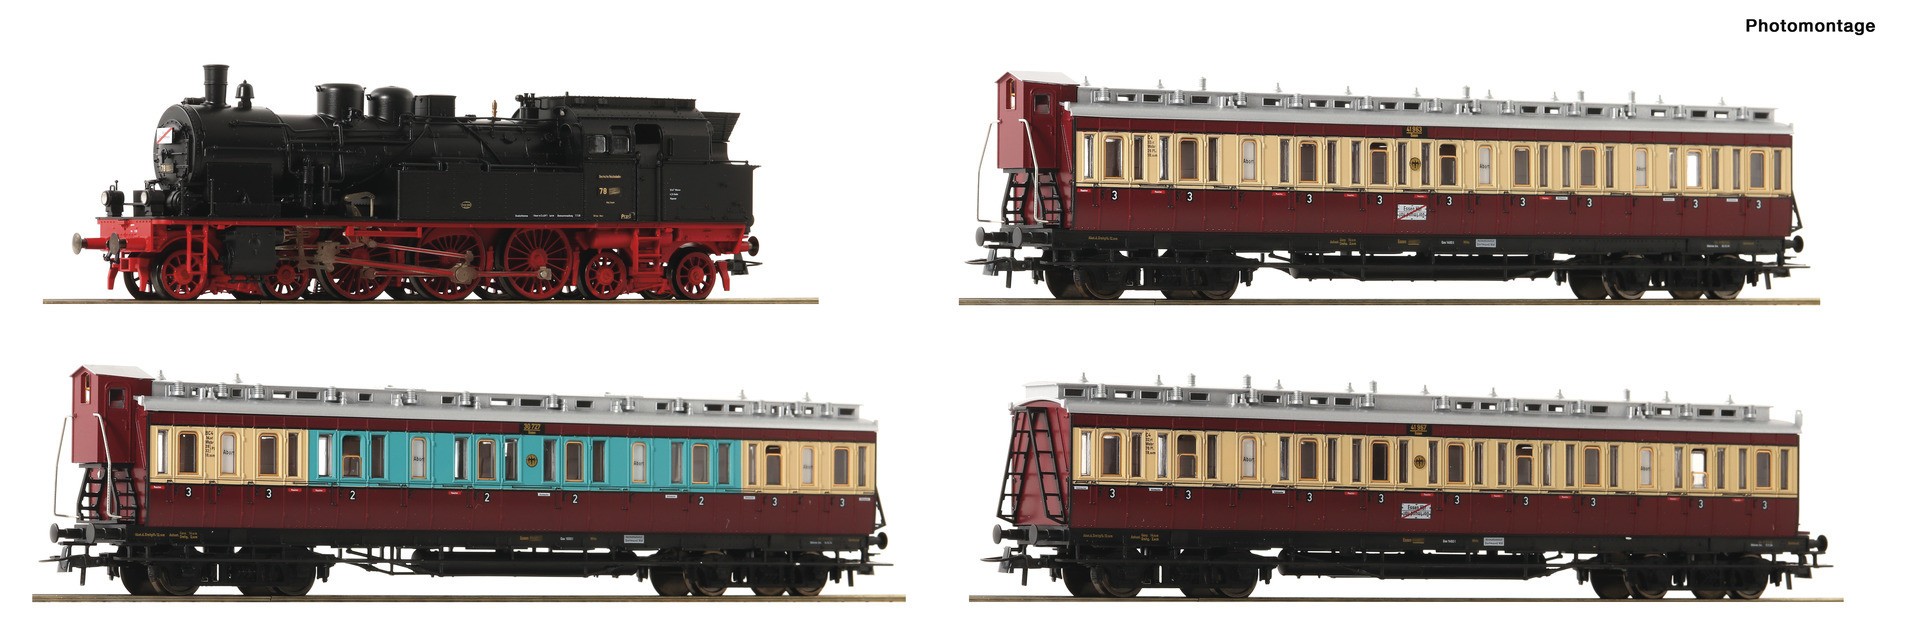  Roco-Fleischmann Roco-Fleischmann 61477-H0 - Trains miniatures : loco